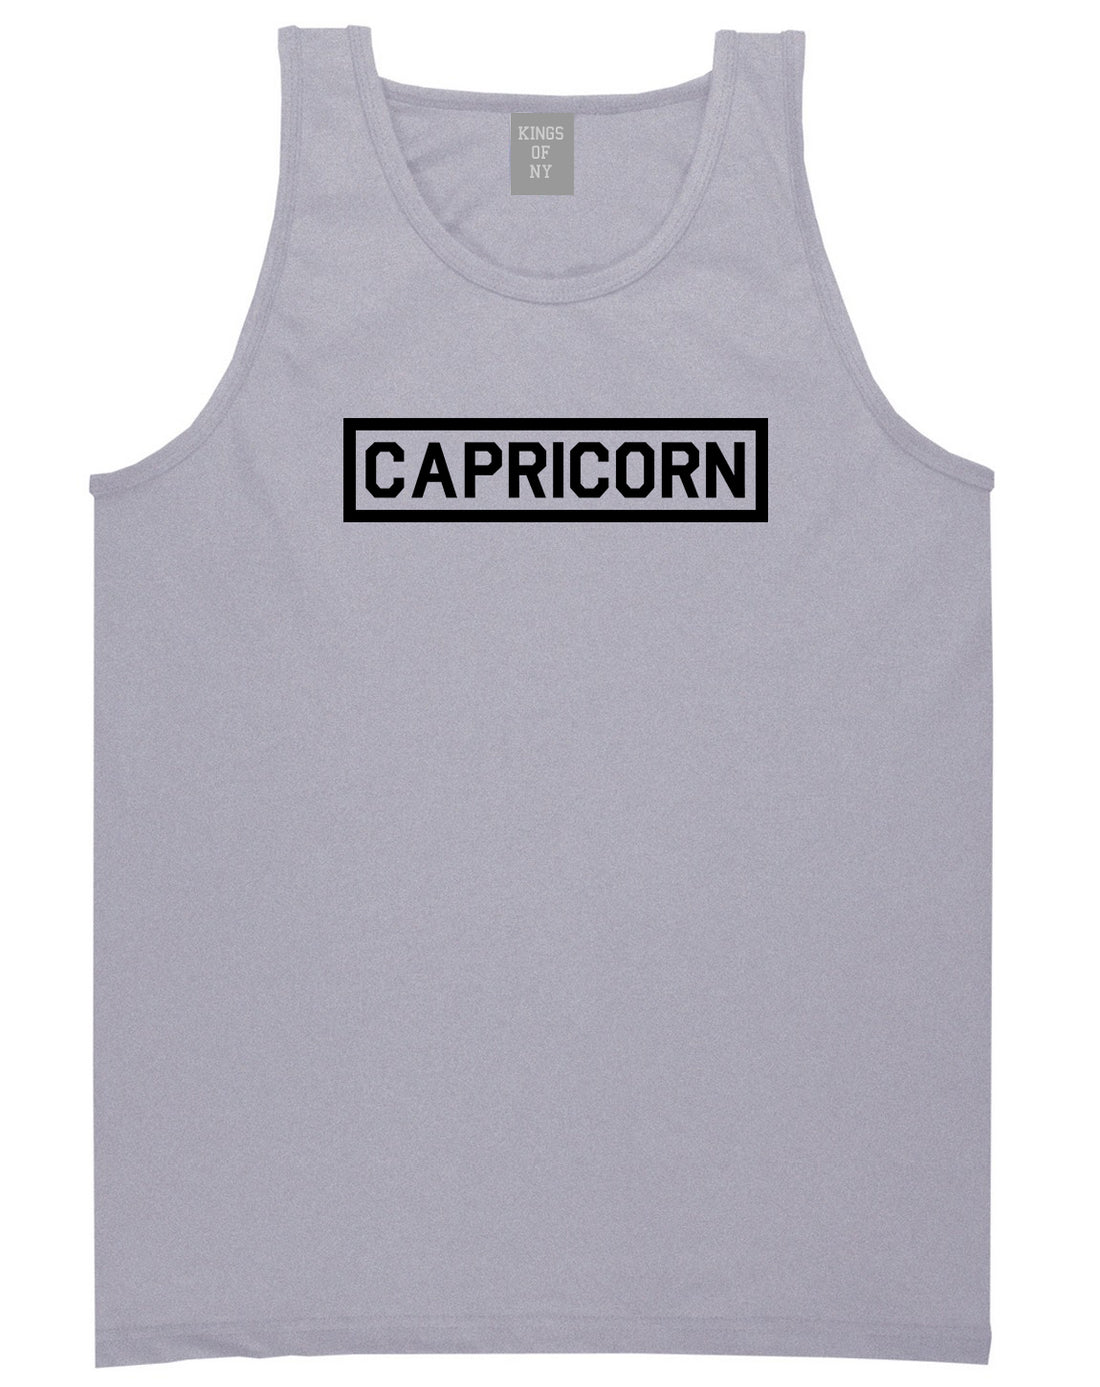 Capricorn Horoscope Sign Mens Grey Tank Top Shirt by KINGS OF NY